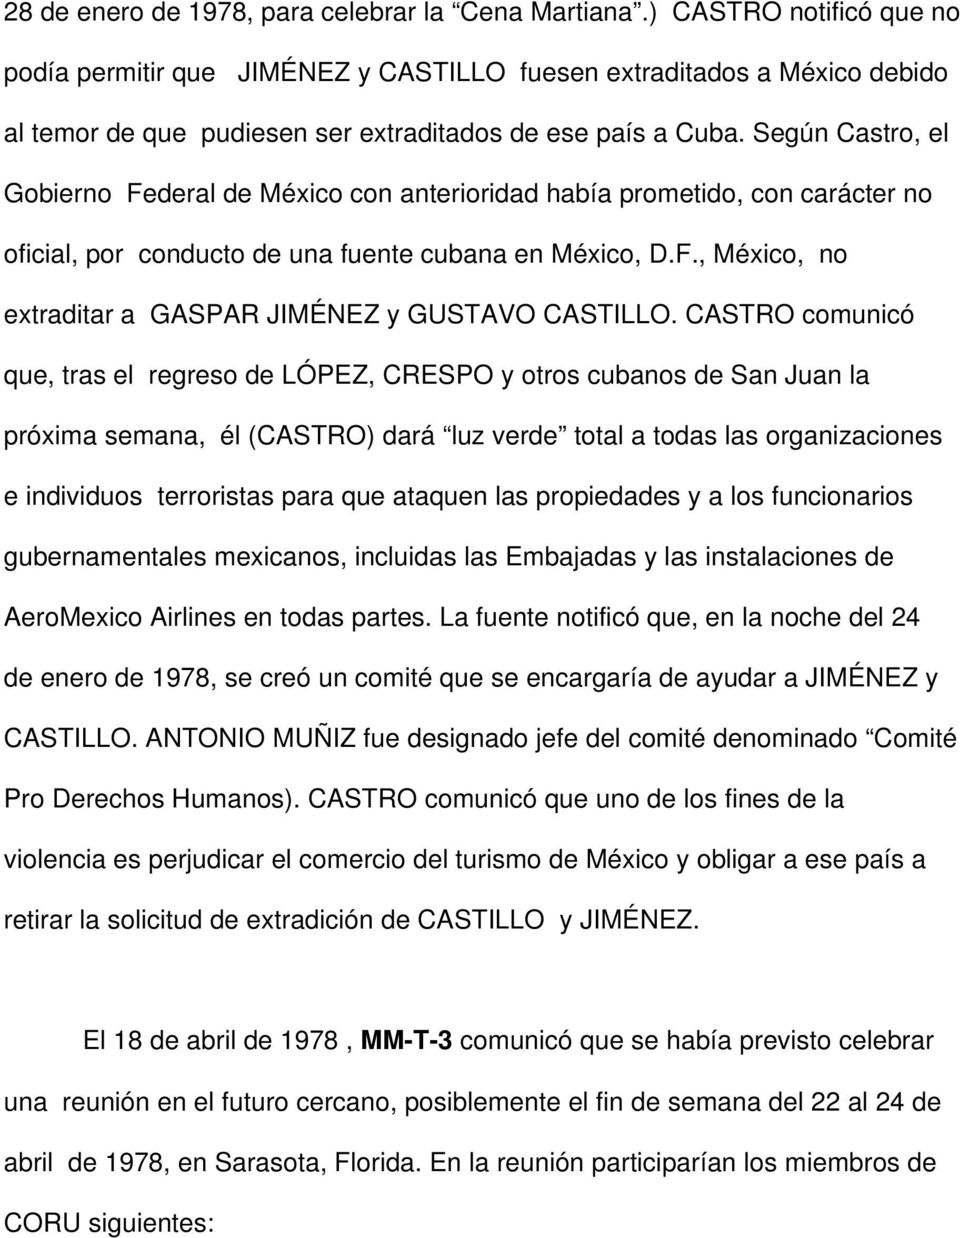 Según Castro, el Gobierno Federal de México con anterioridad había prometido, con carácter no oficial, por conducto de una fuente cubana en México, D.F., México, no extraditar a GASPAR JIMÉNEZ y GUSTAVO CASTILLO.